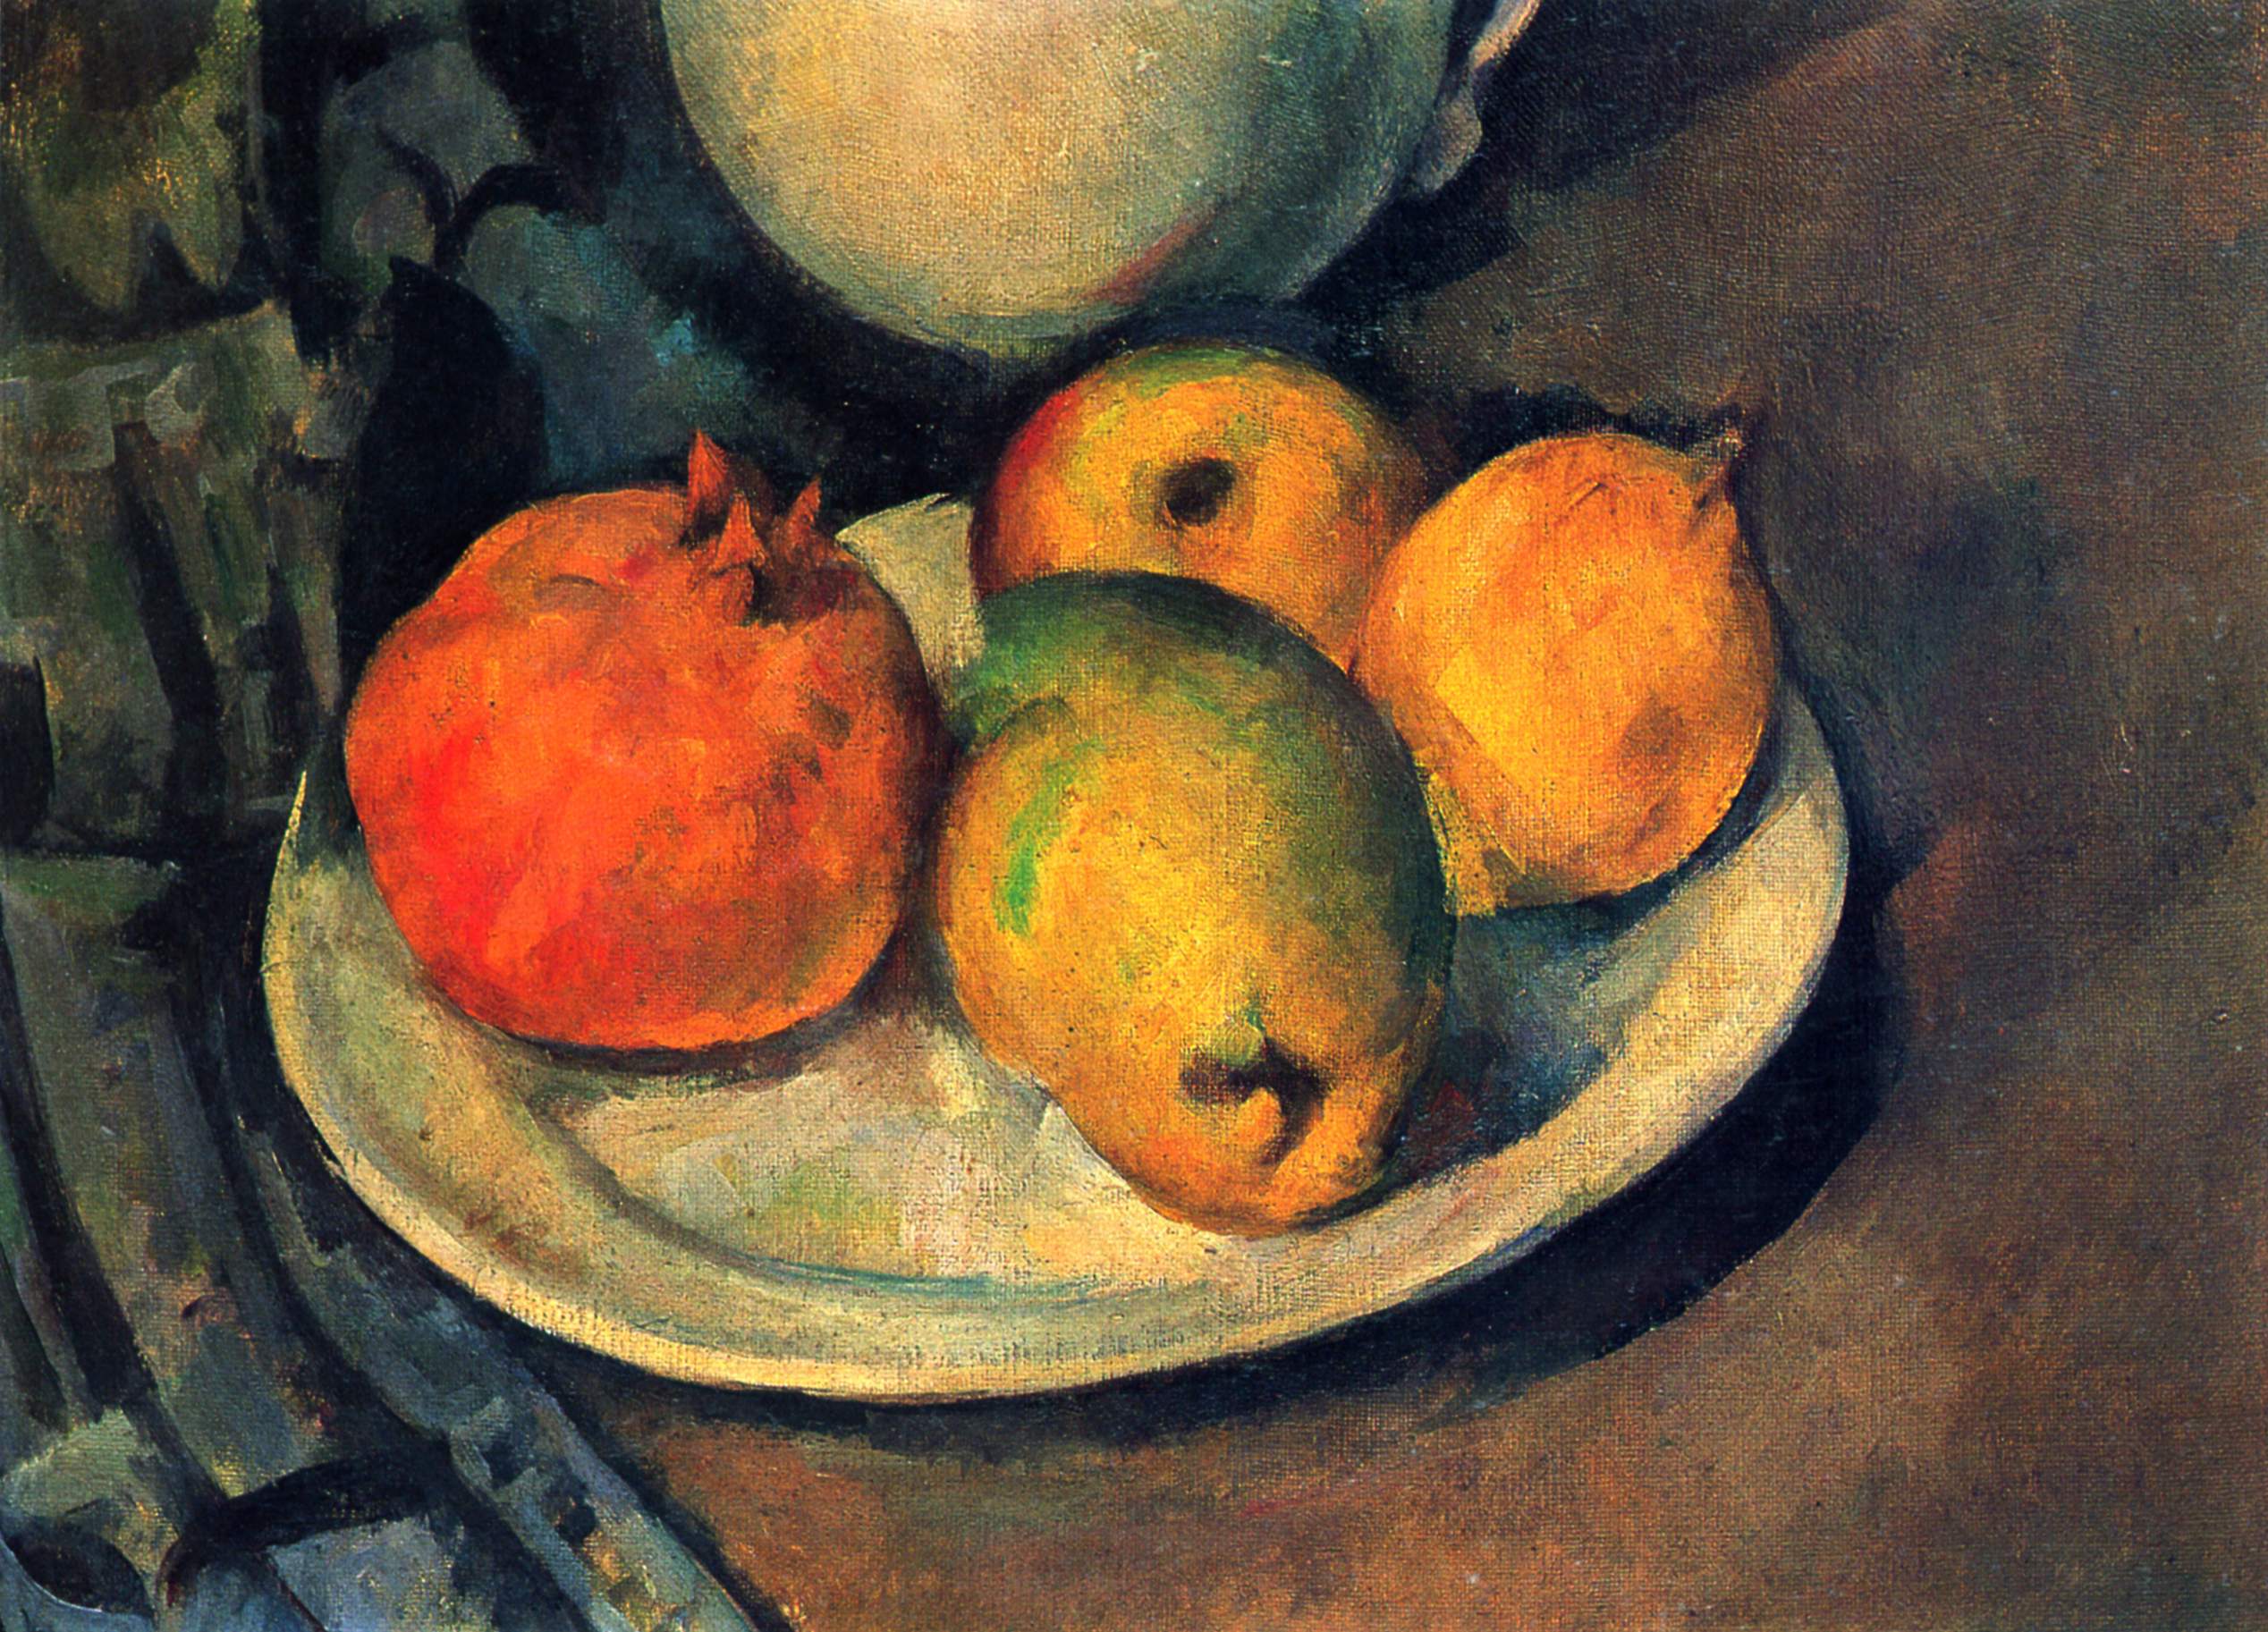 Bodegón con granadas y peras by Paul Cézanne - 1890 - 27 x 36 cm Colección privada